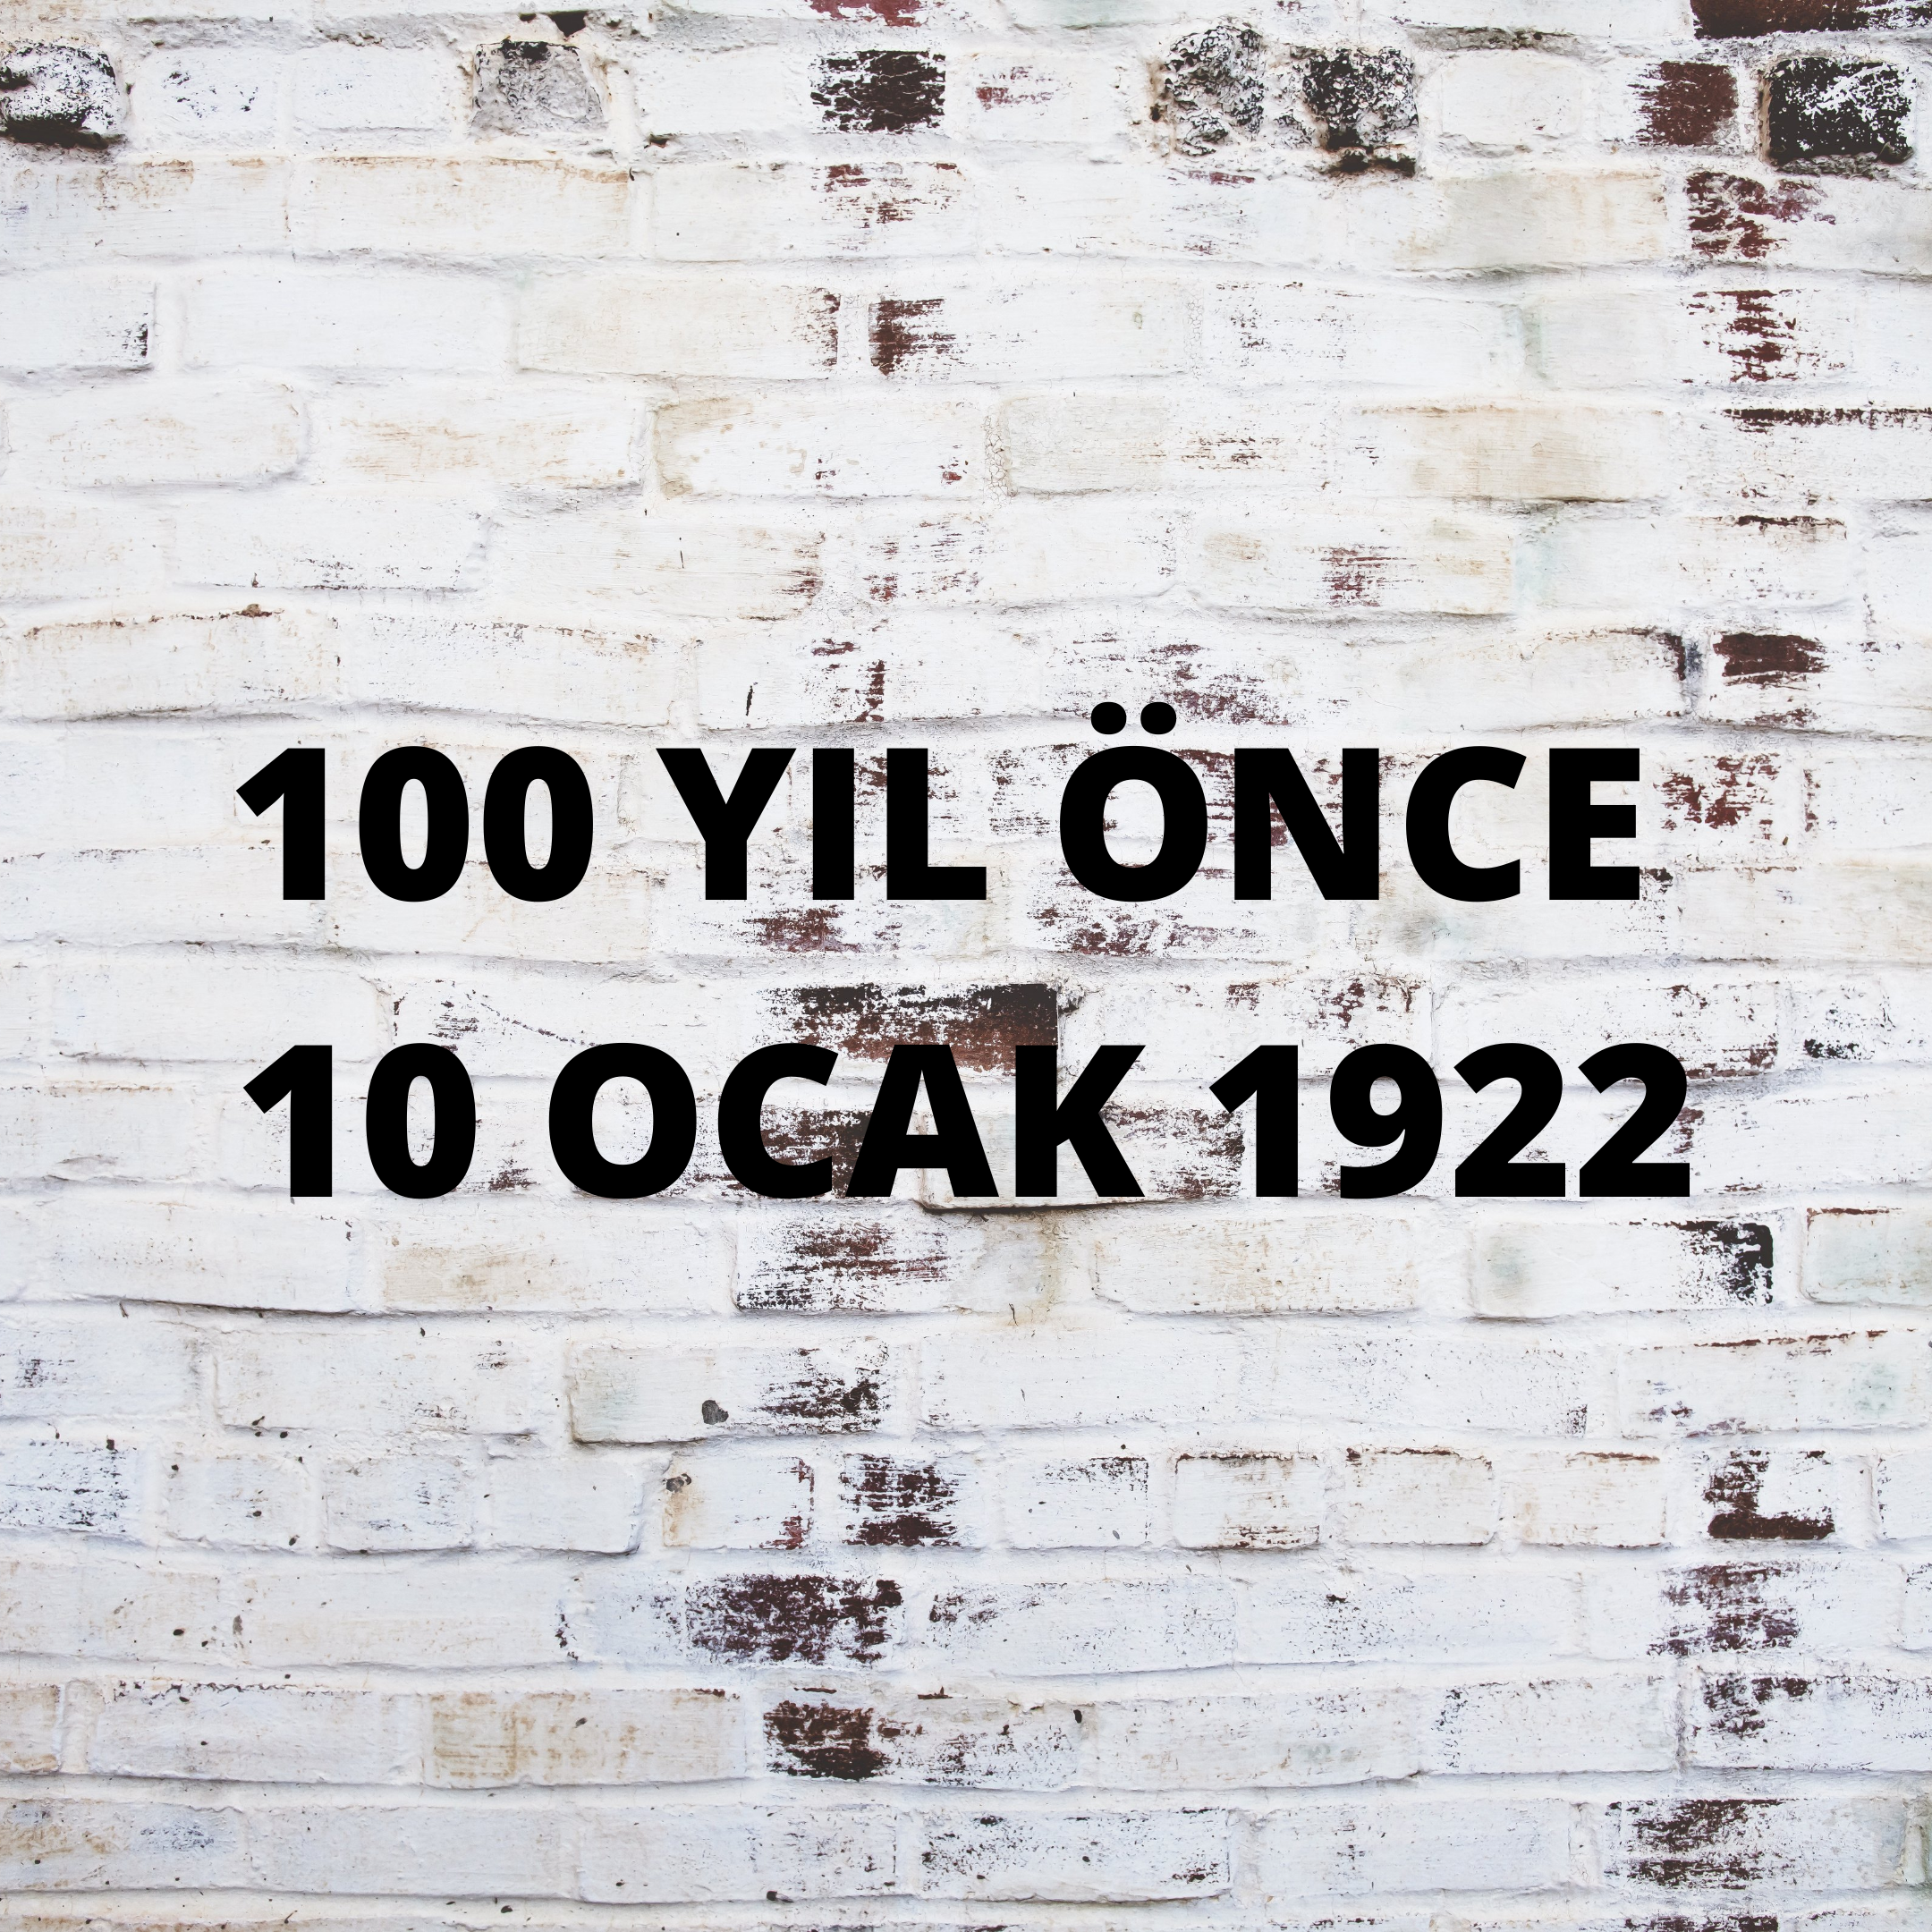 100 YIL ÖNCE 10 OCAK 1922